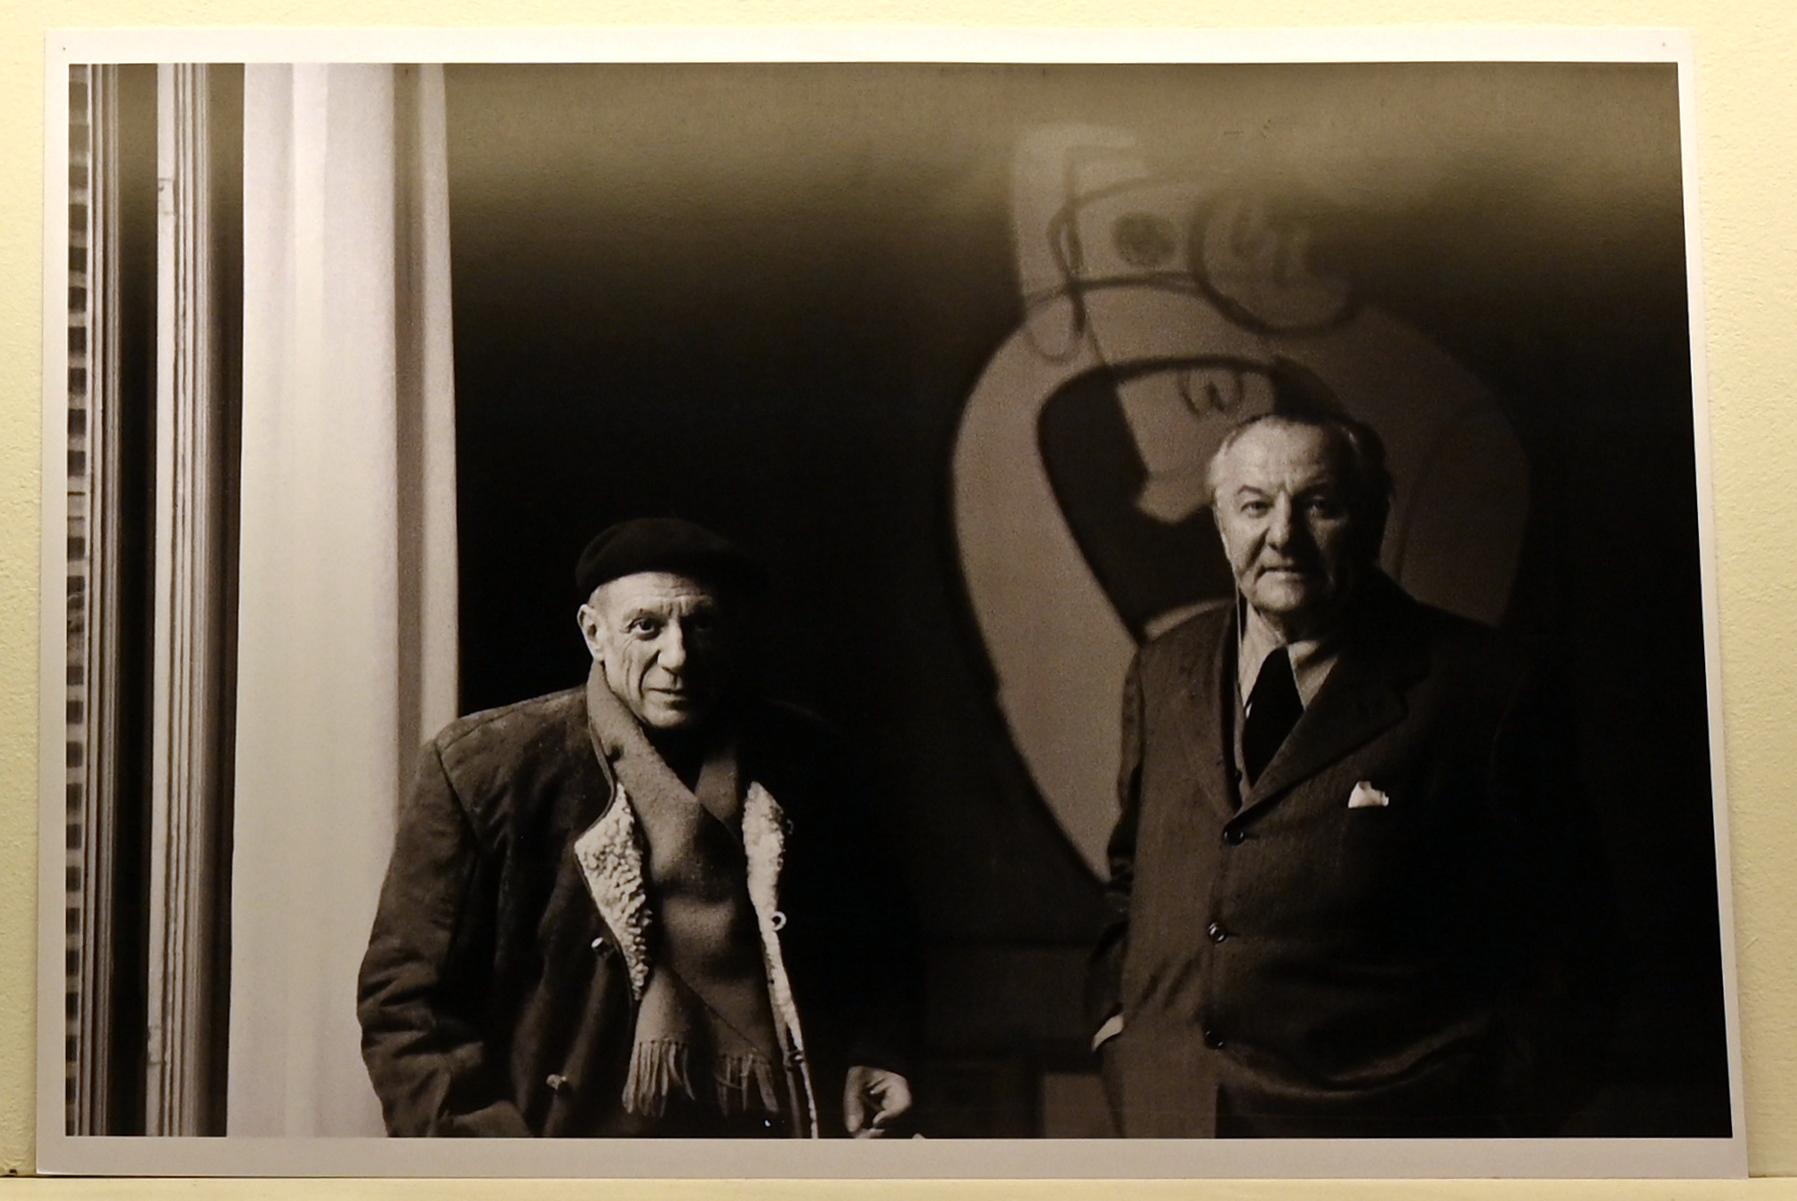 Hans Hofmann und Pablo Picasso in Hofmanns Ausstellung, Galerie Maeght, Paris, Neumarkt in der Oberpfalz, Museum Lothar Fischer, Ausstellung "Hans Hofmann. Chimbote 1950 - Farben für die neue Stadt" vom 23.10.2022-29.01.2023, 1949, Bild 1/2